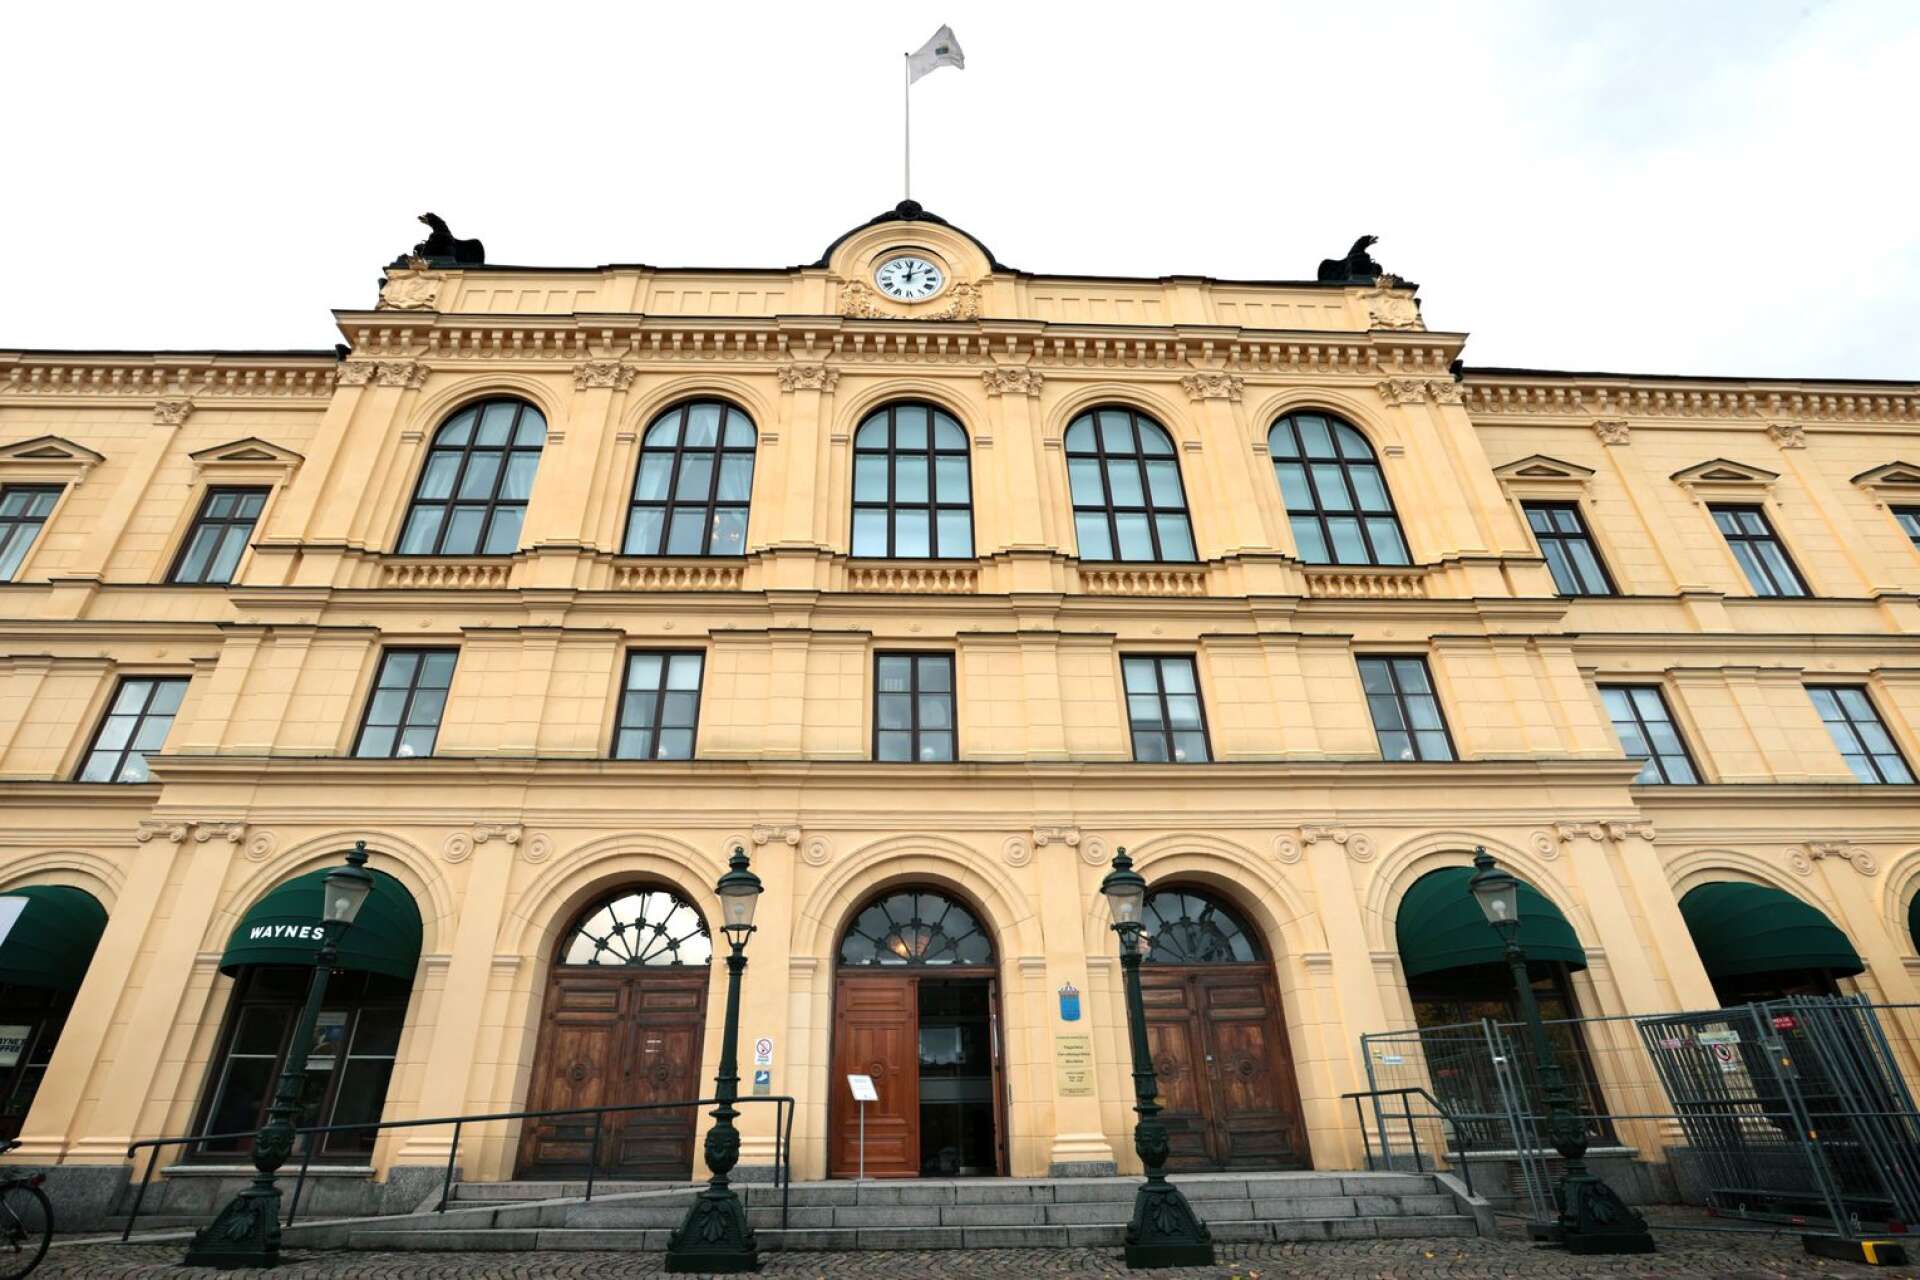 En 17-årig pojke misstänks för sexuellt utnyttjande av barn, enligt ett åtal som lämnats till Värmlands tingsrätt.